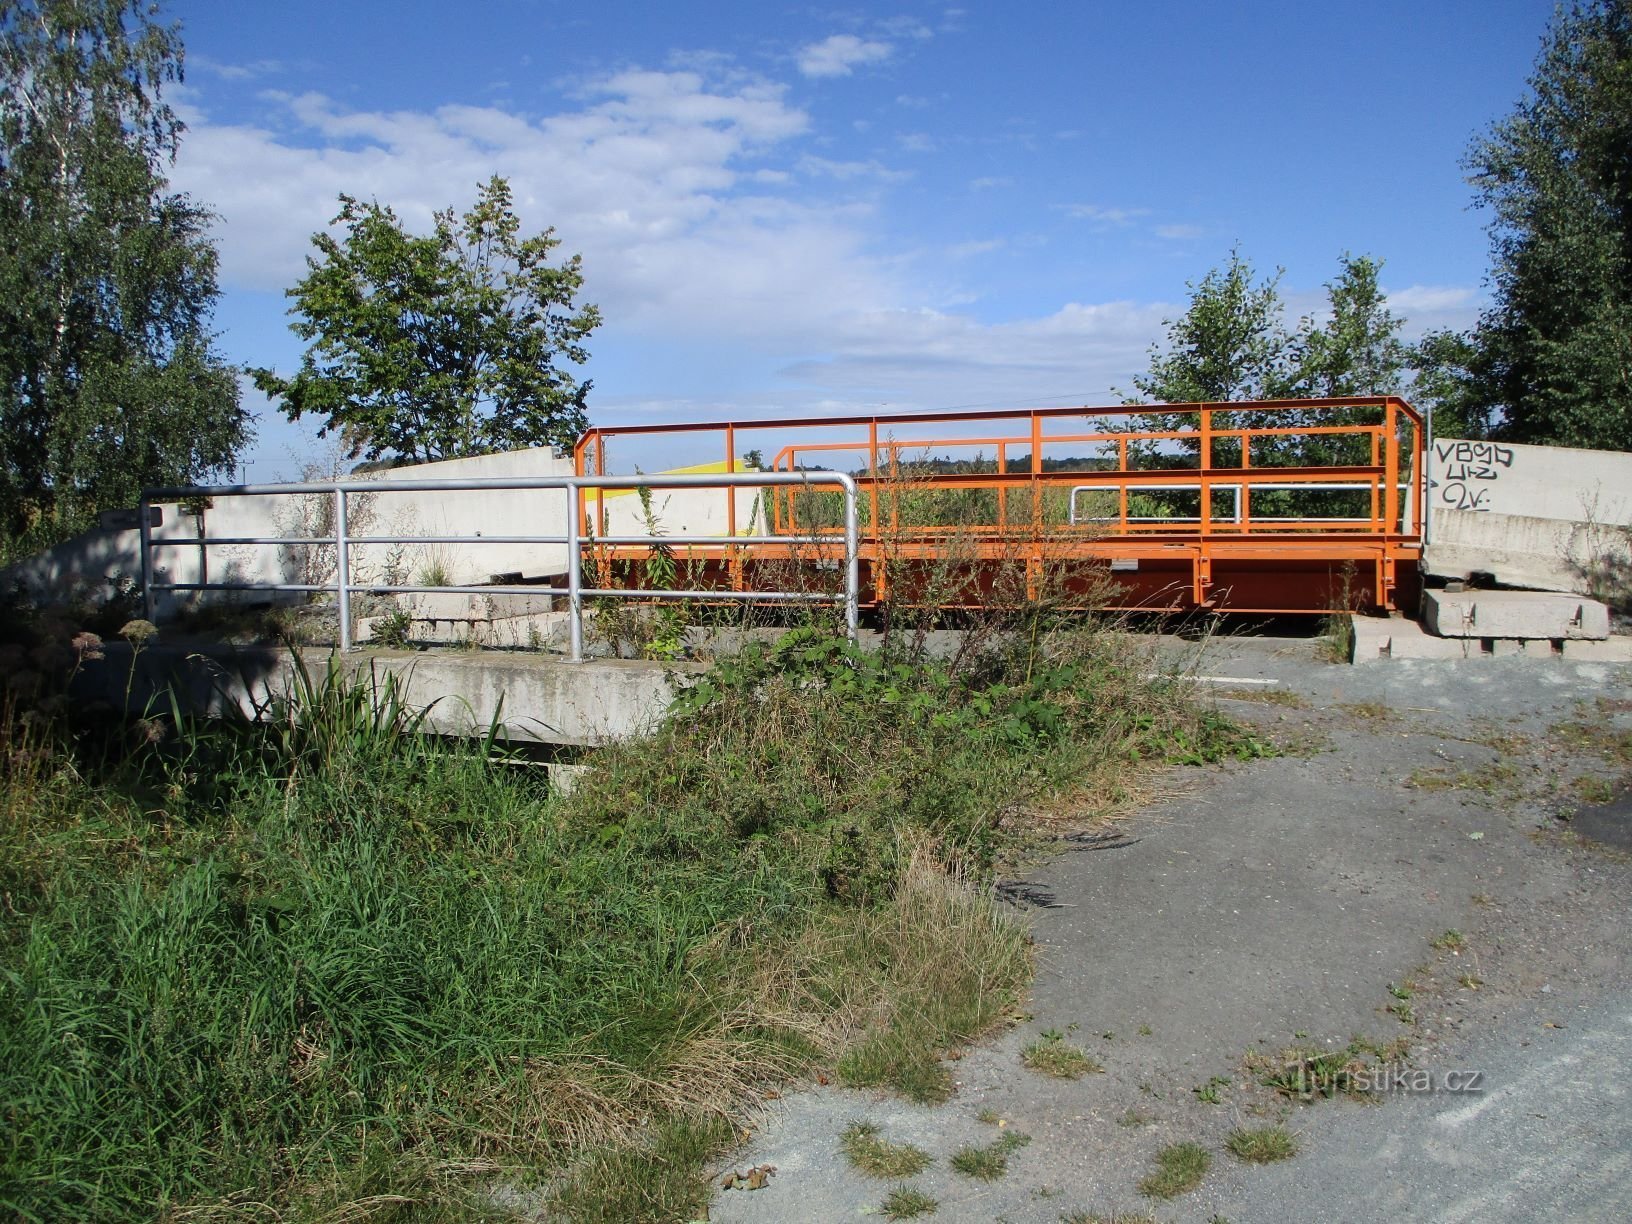 Cầu và cầu tạm bắc qua Velká strouha (Pohránov, 28.8.2020/XNUMX/XNUMX)